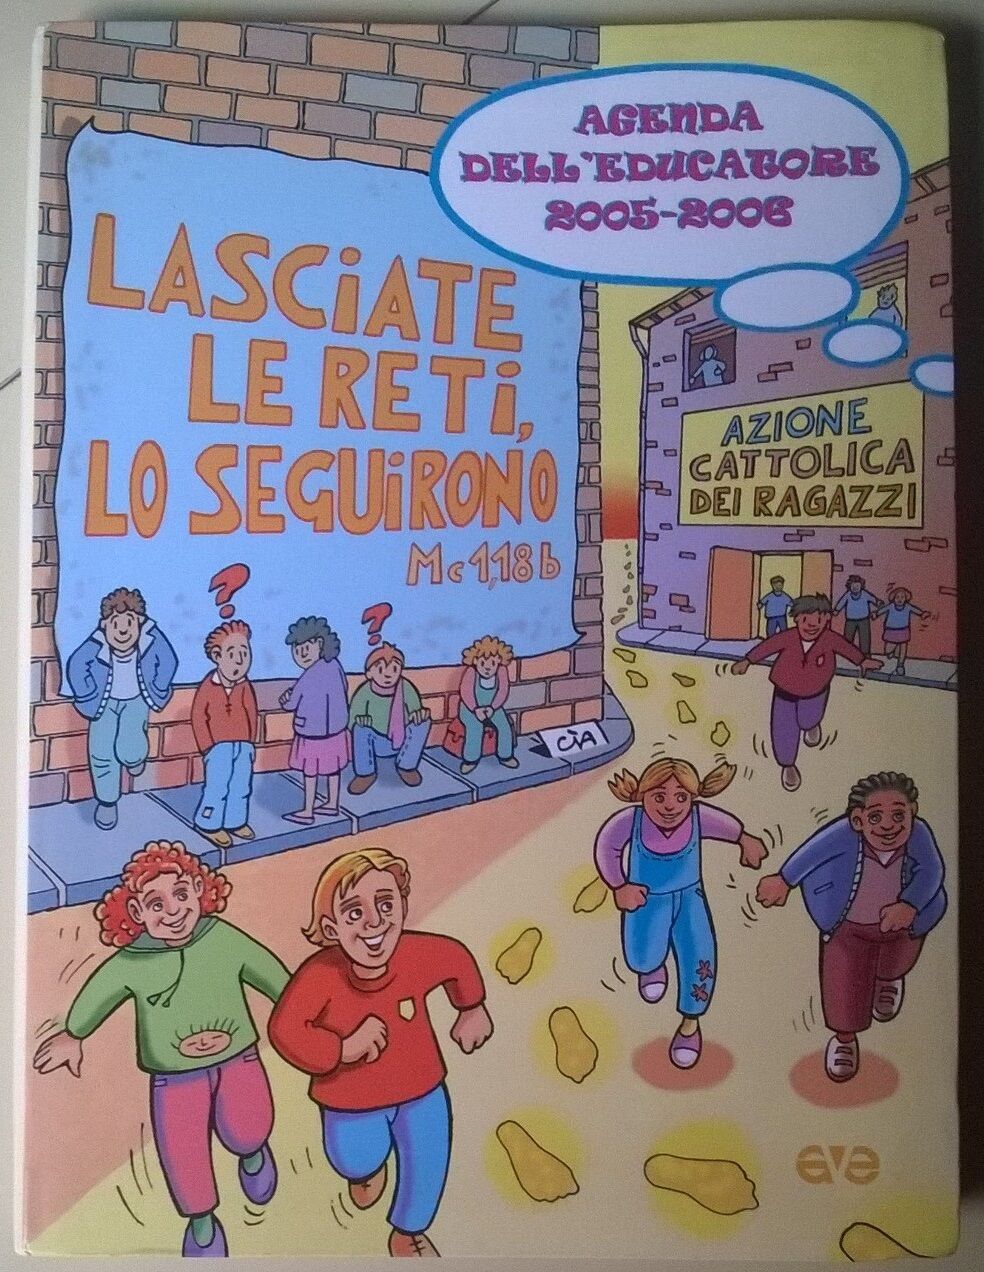 Agenda delL'educatore 2005-2006 - Azione Cattolica Dei Ragazzi - 2005, Ave - L 